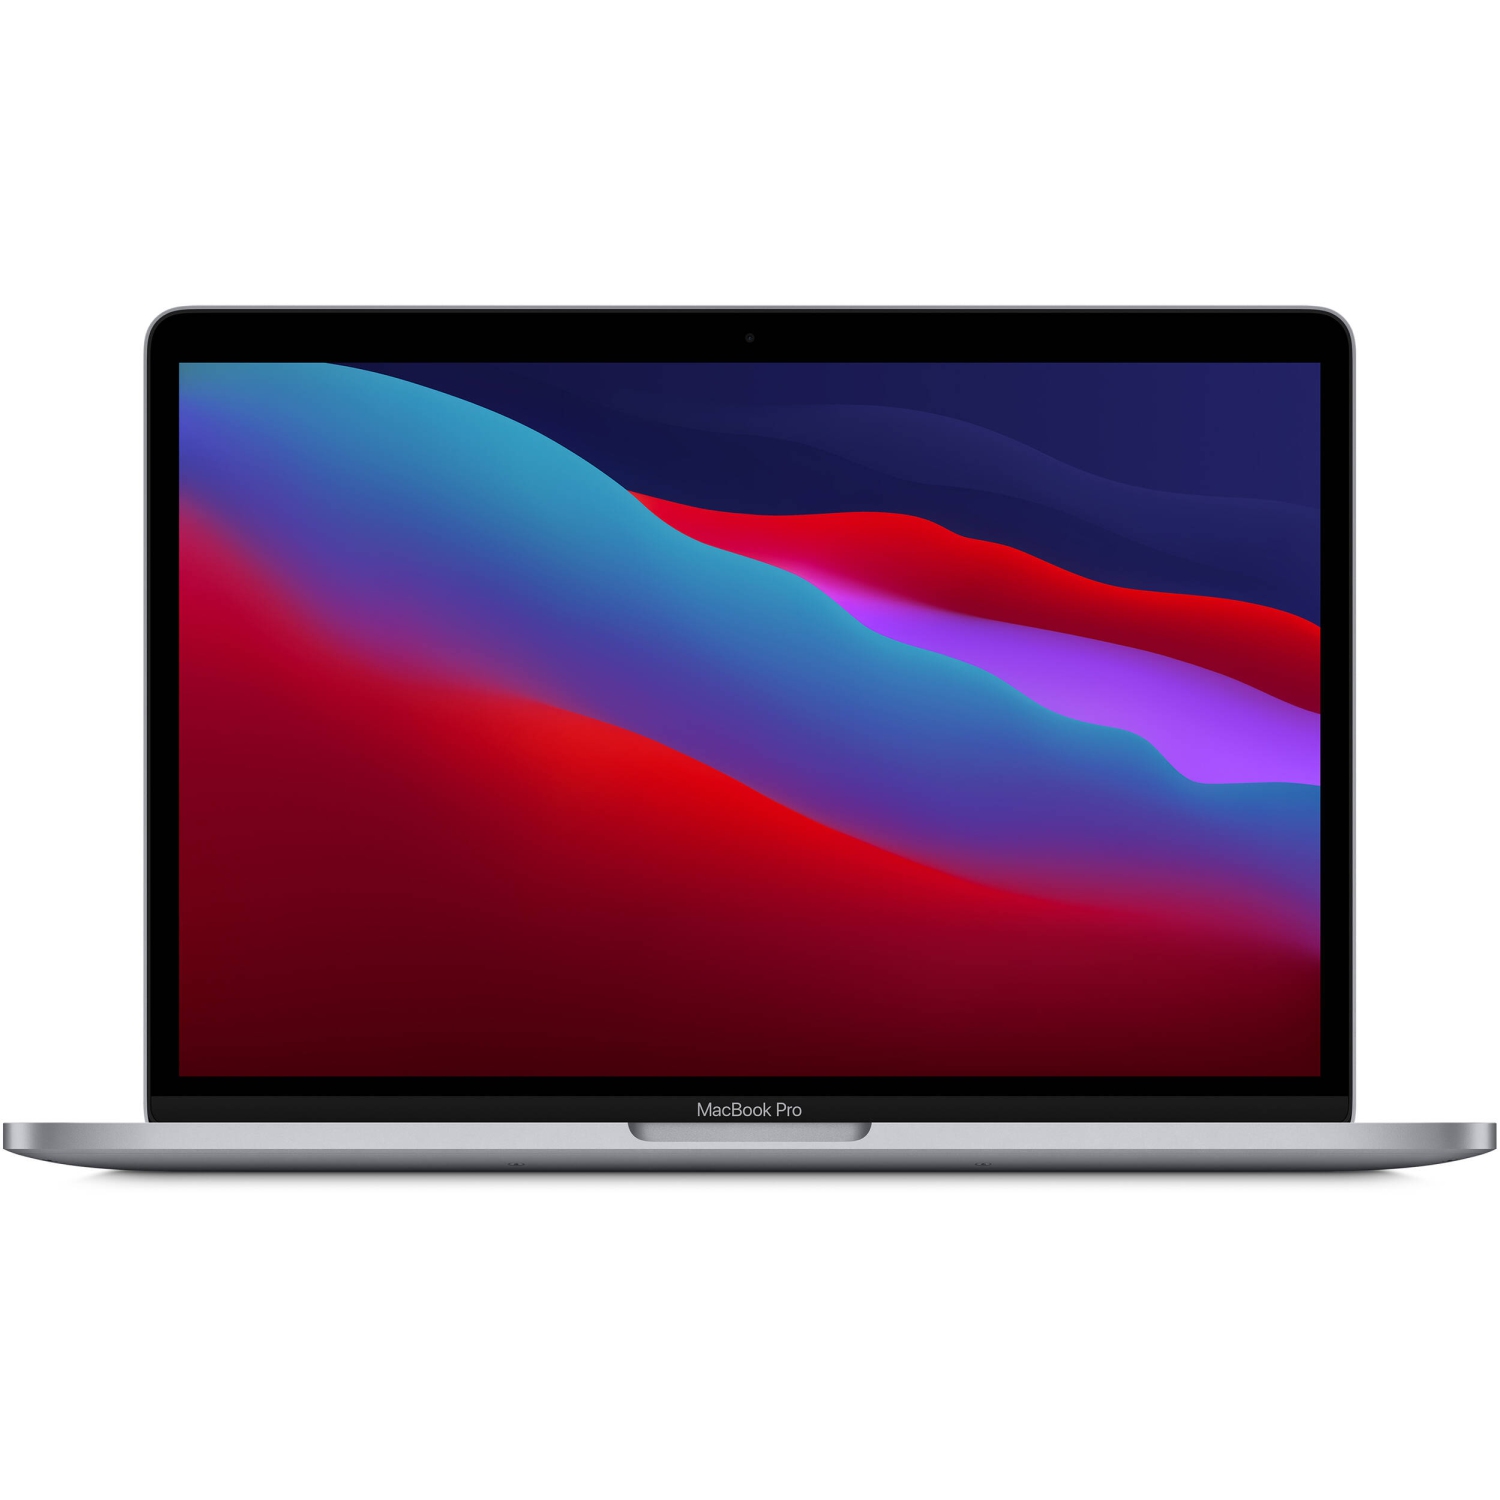 Apple MacBook Pro 13.3" w/ Touch Bar (Fall 2020) - Space Grey (Apple M1 Chip / 256GB SSD / 8GB RAM) - En - Open box